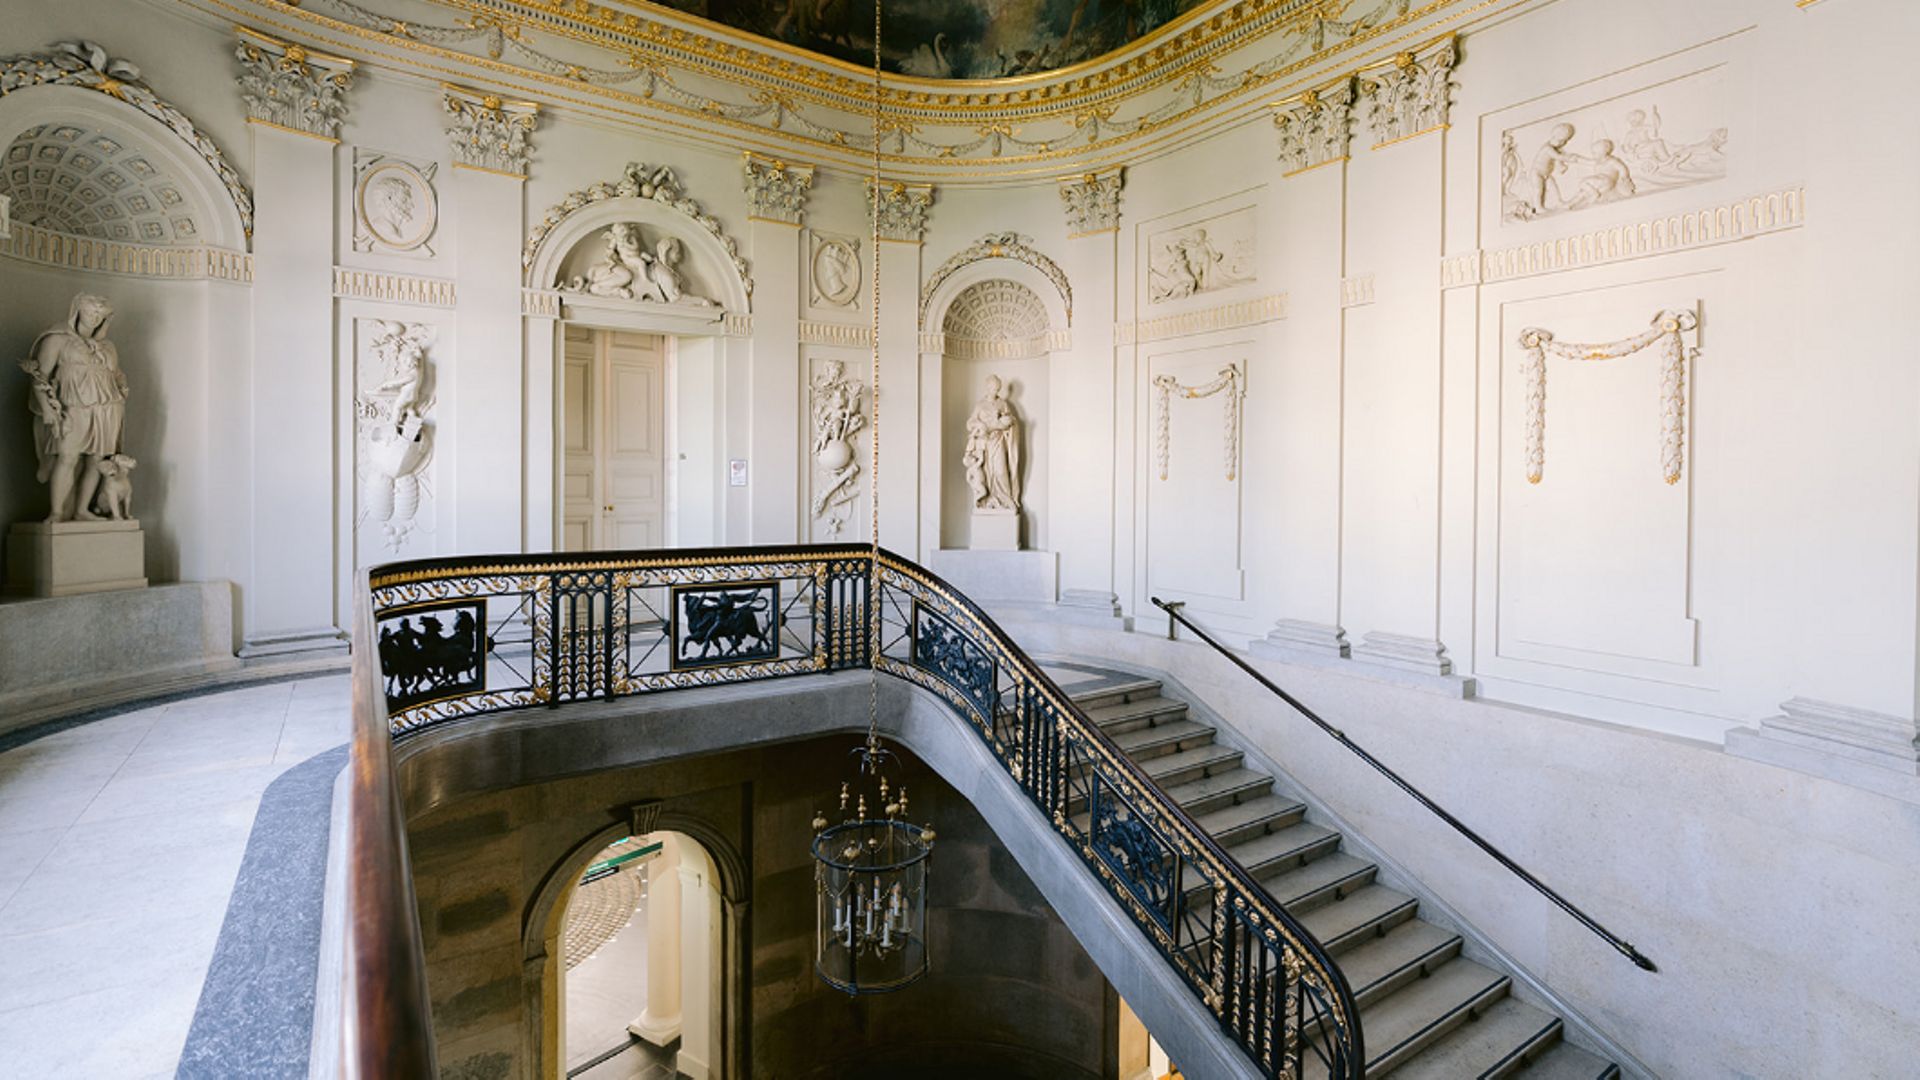 La KBR a décidé de redonner vie à la musique de Toots Thielemans dans le somptueux décor du Palais de Charles de Lorraine.